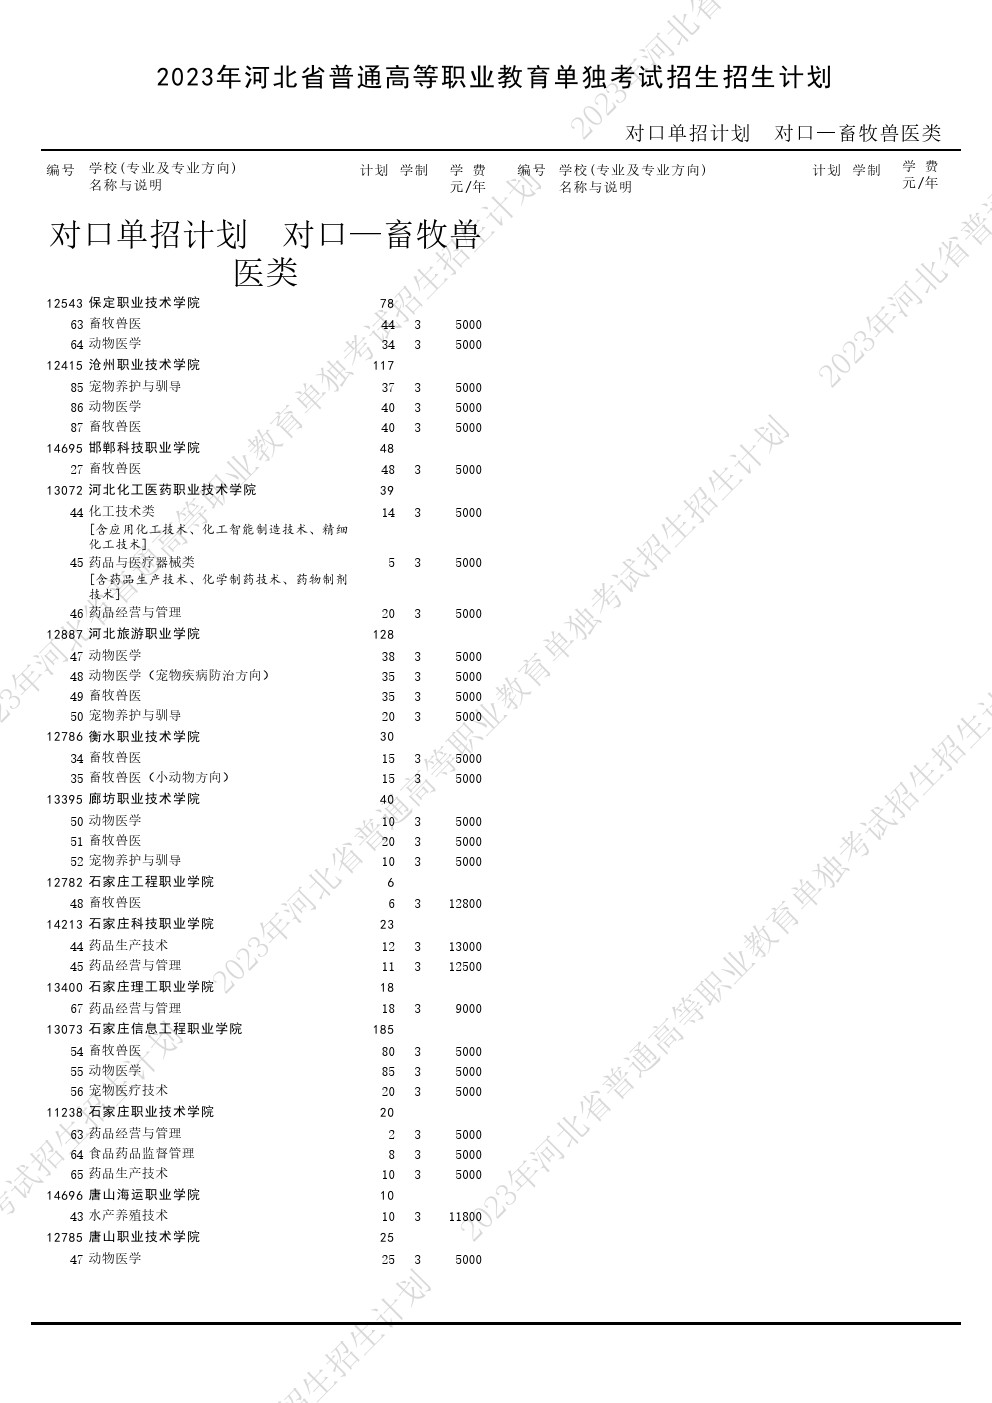 2023年河北省高职单招考试对口畜牧兽医类招生计划